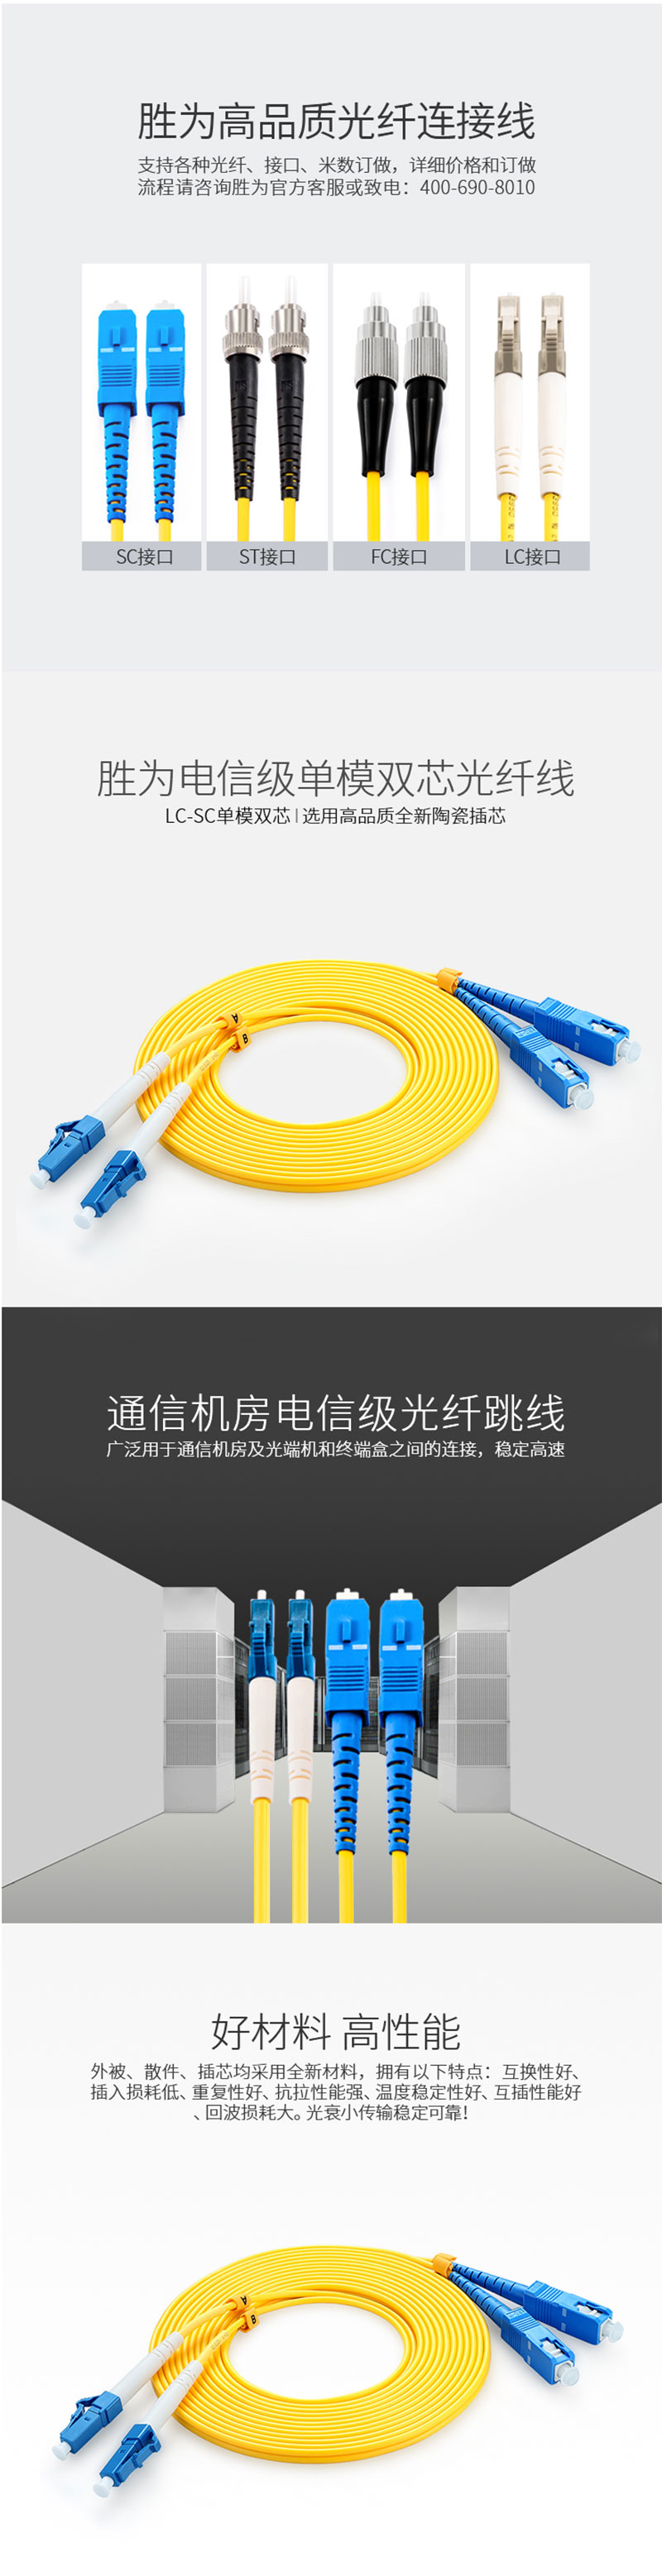 胜为（shengwei）FSC-108 电信级光纤跳线